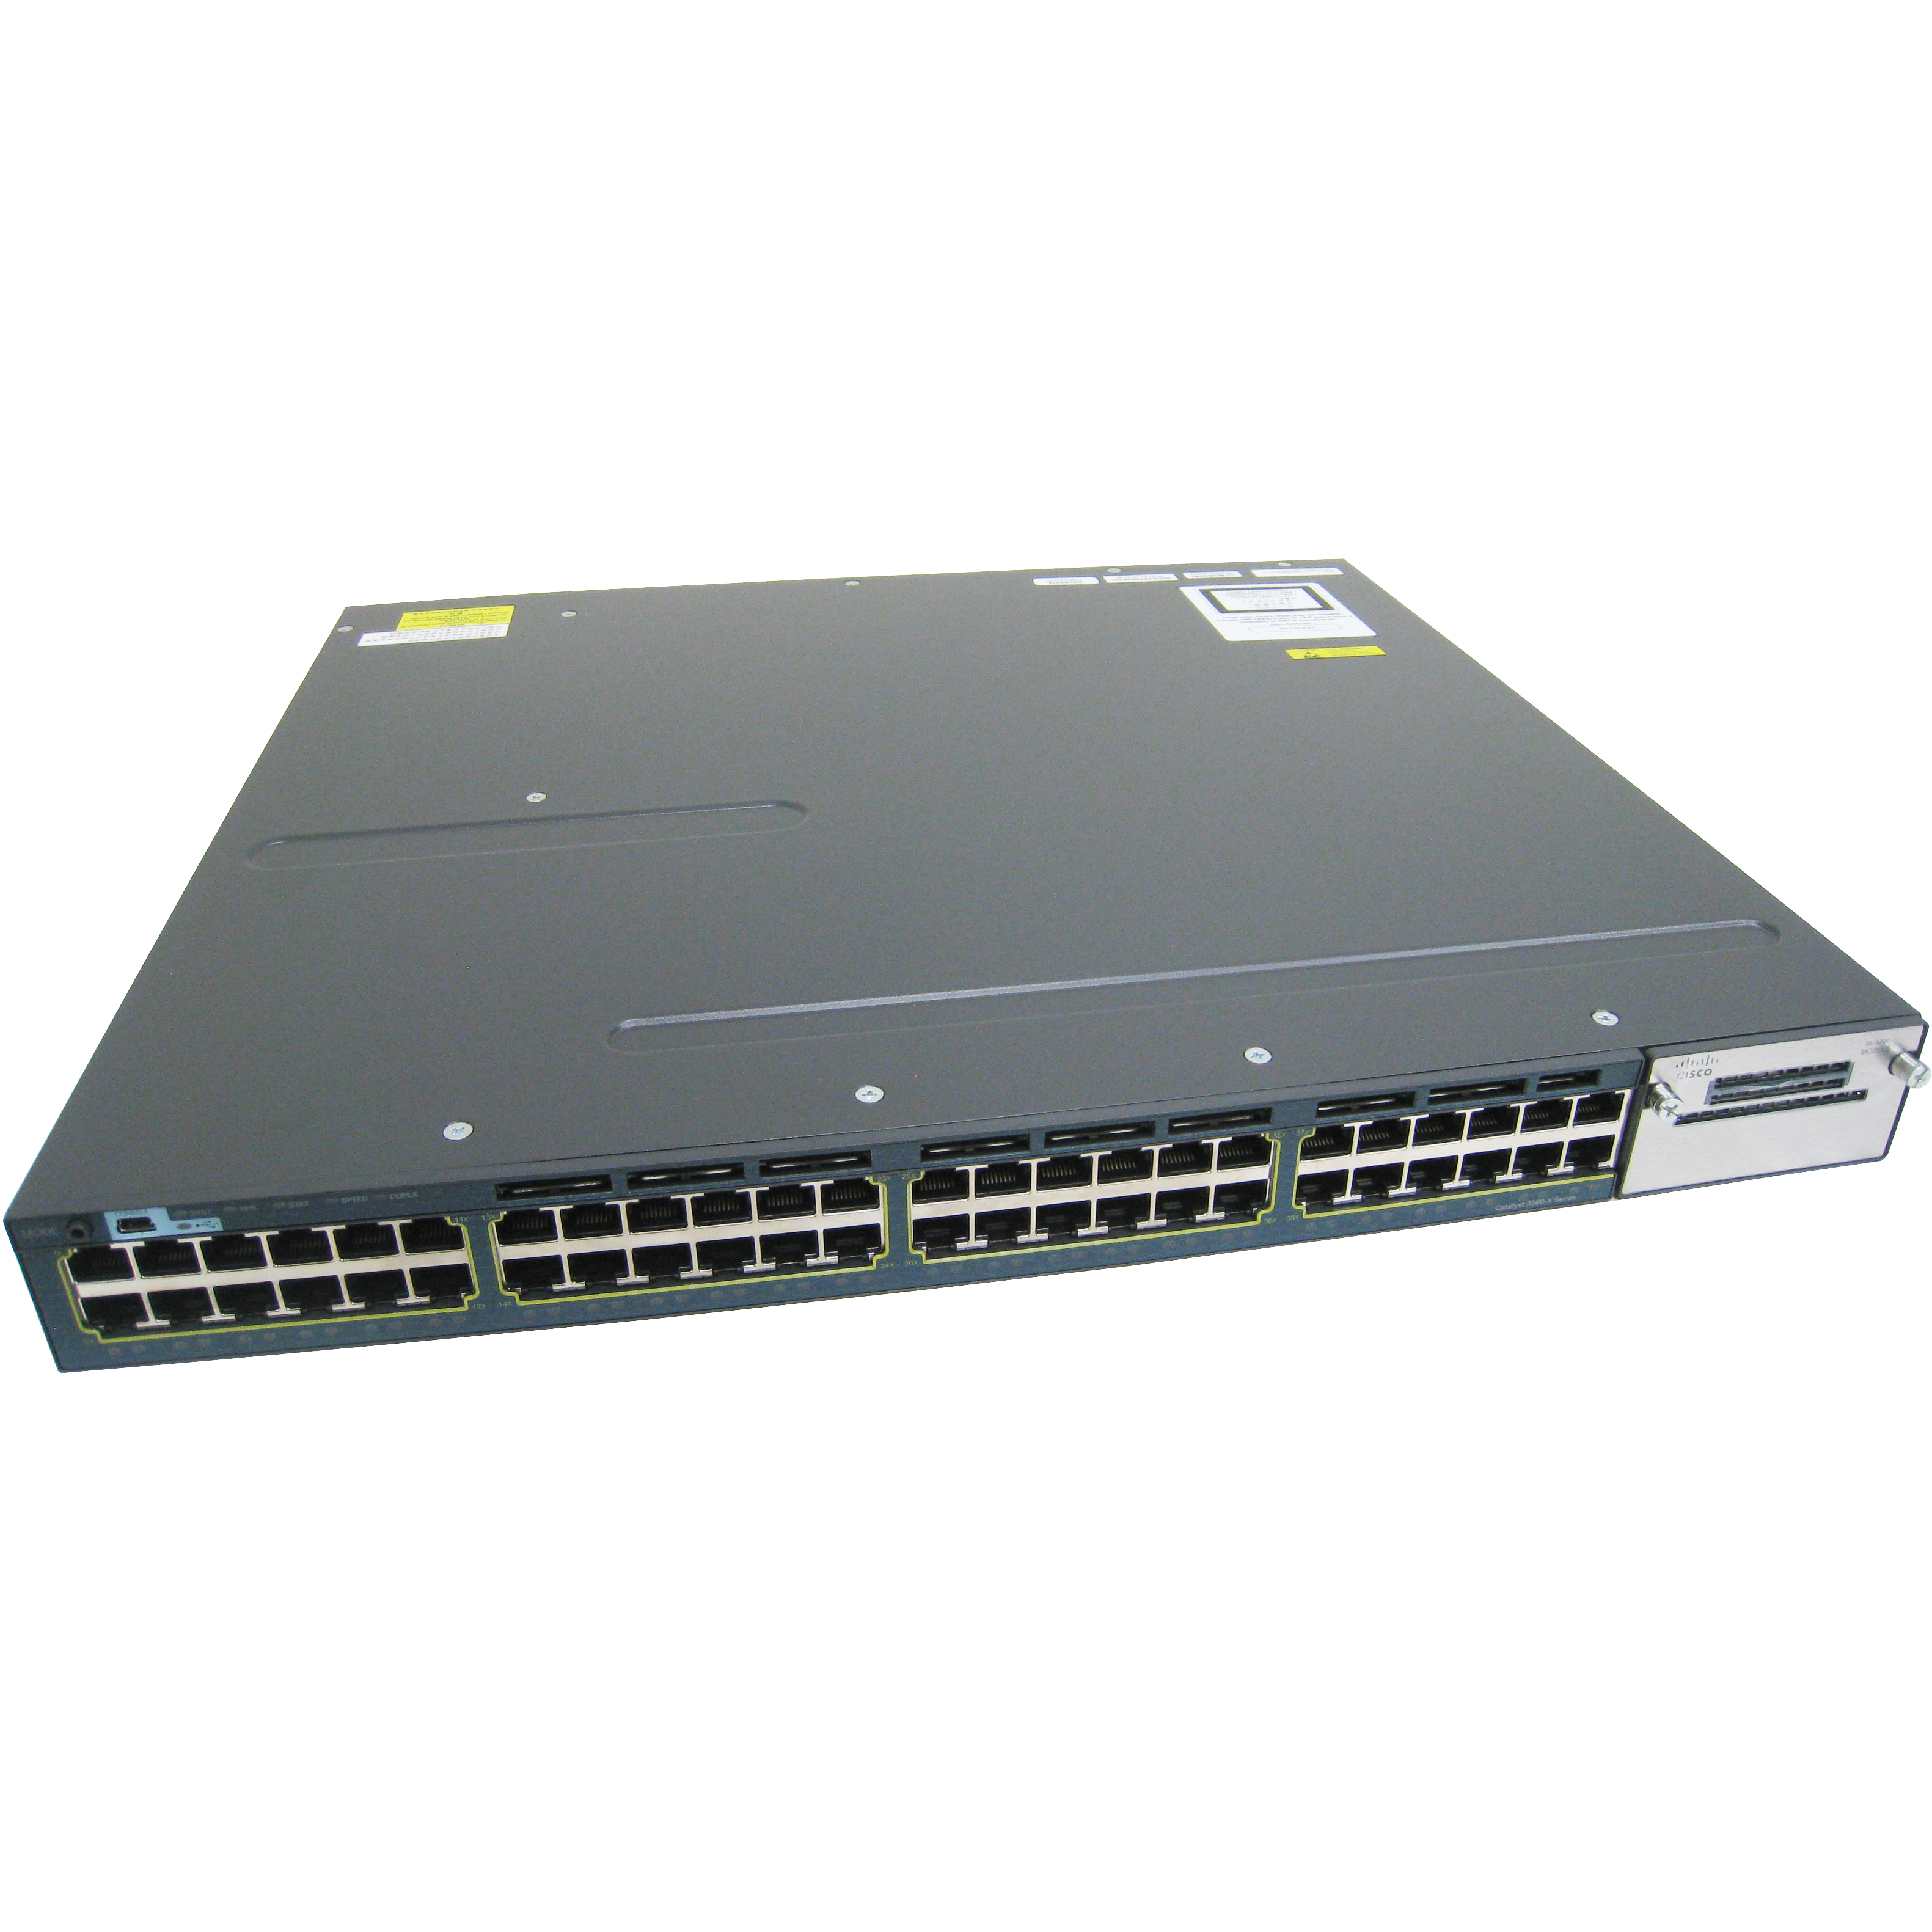 Cisco WS-C3560X-48P-S